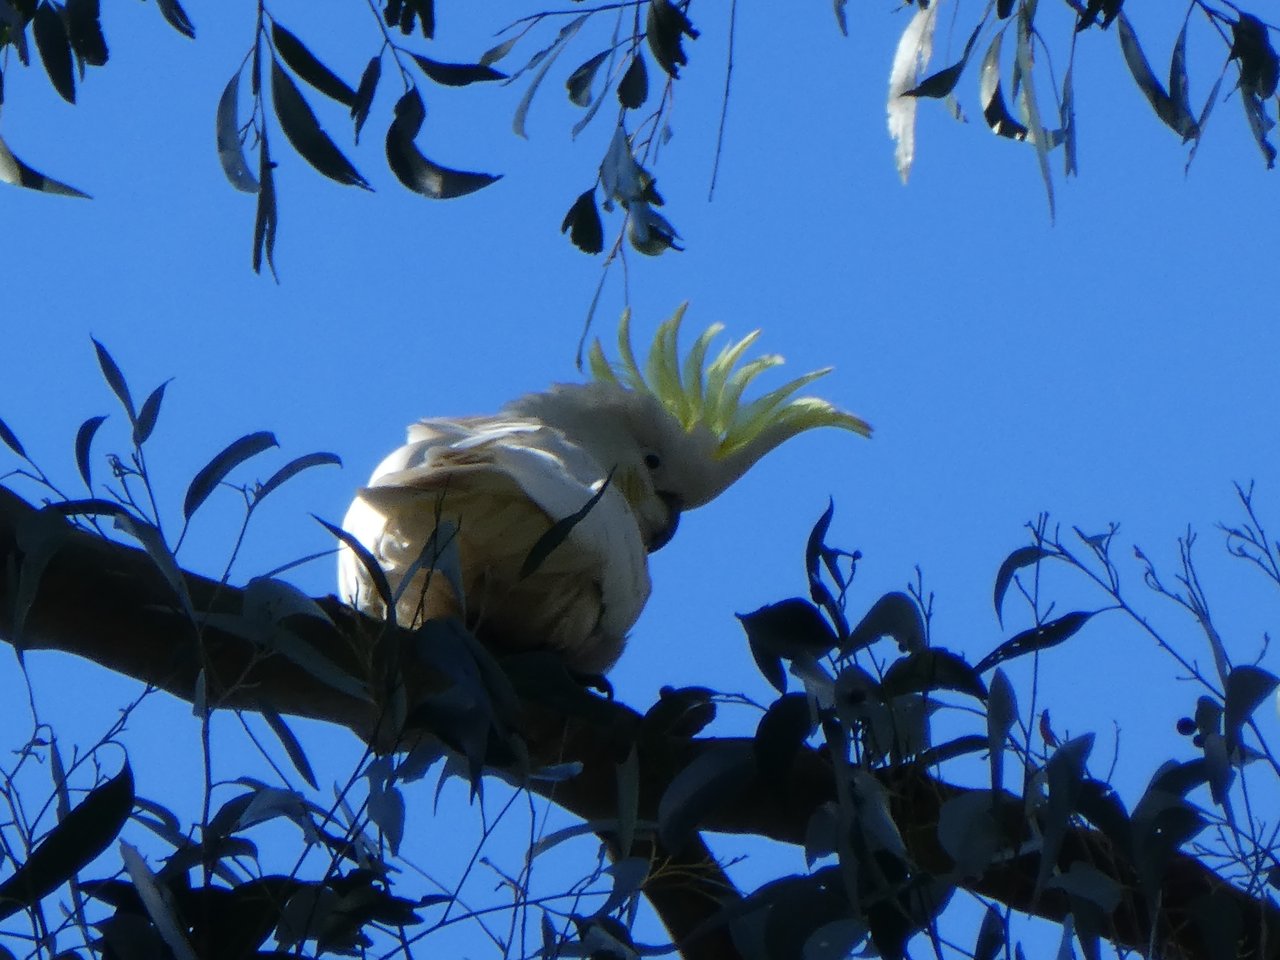 Cockatoo, papuga ta potrafi naśladować głosy człowieka